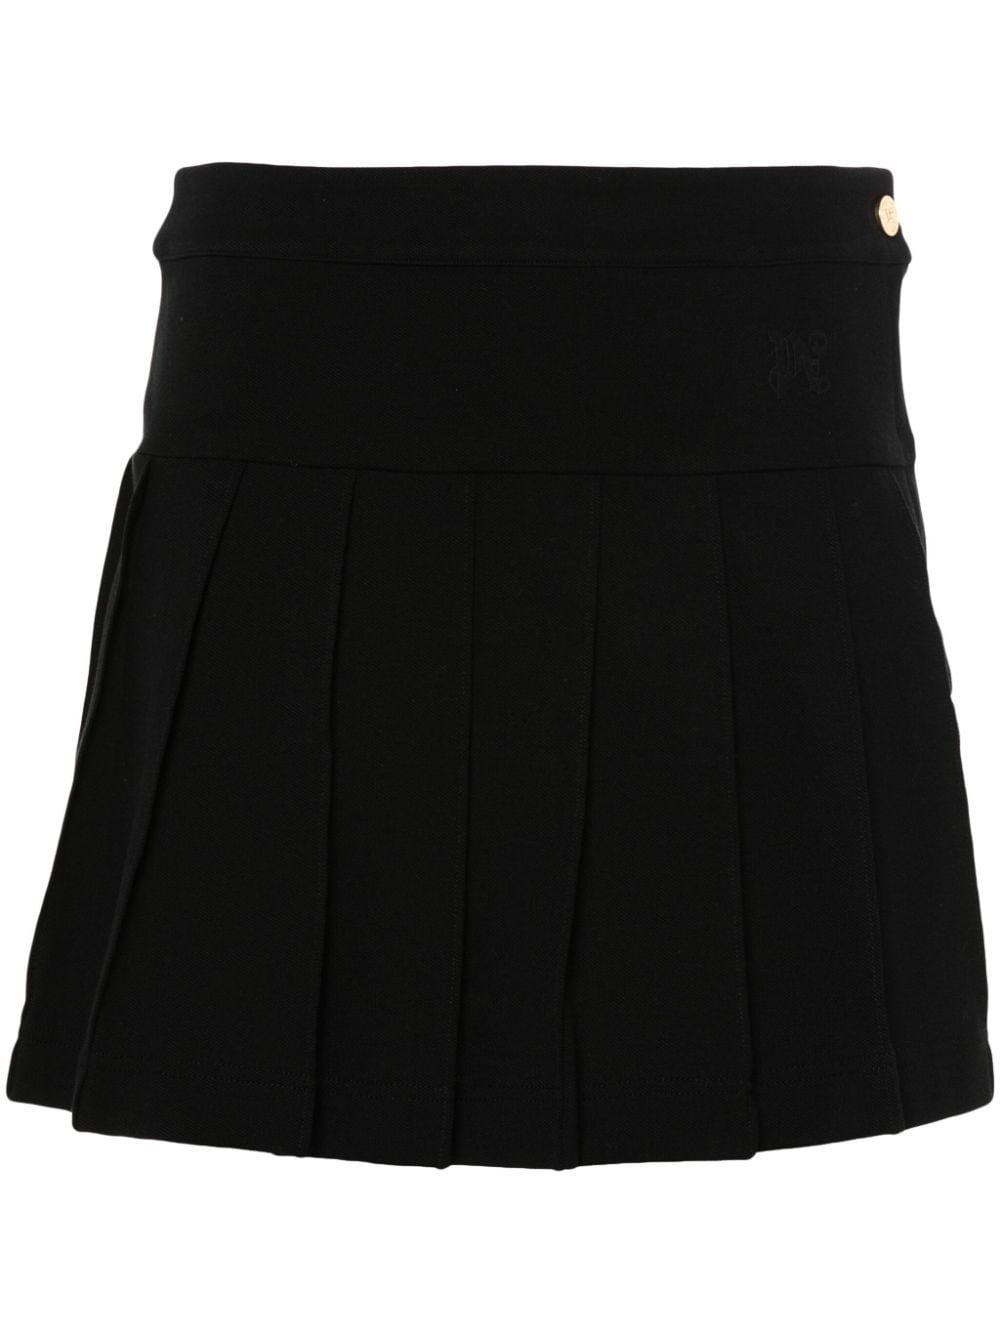 Monogram pleated skirt - 1